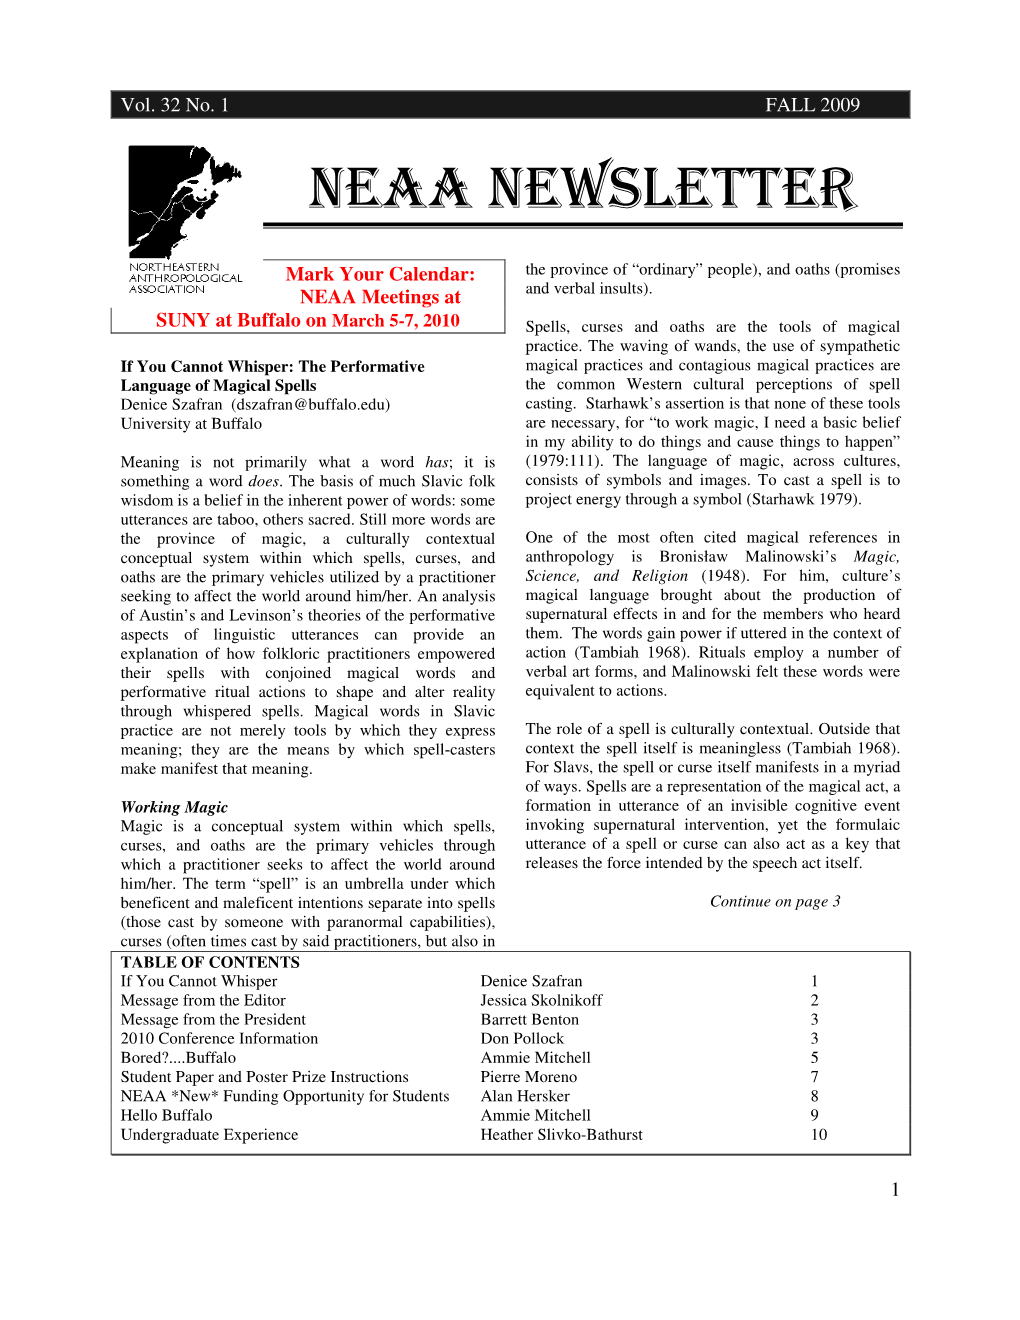 Neaa Newsletter